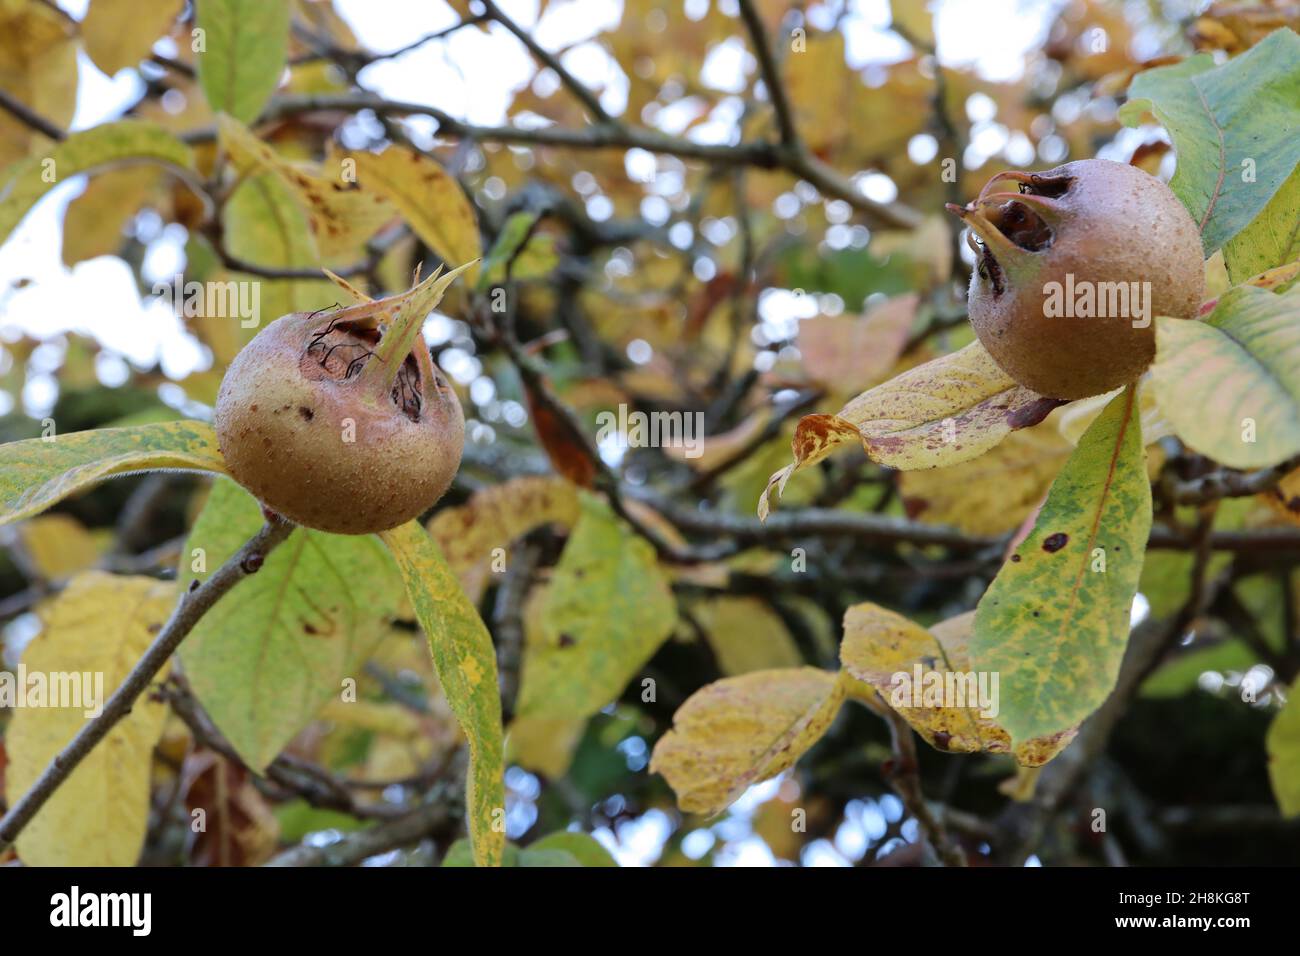 Mespilus germanica gemeine Mispel – rotbraune Frucht oder Pome mit weit ausladenden Kelchblättern, mittleren und dunkelgrünen und gelben Blättern, November, England, Großbritannien Stockfoto